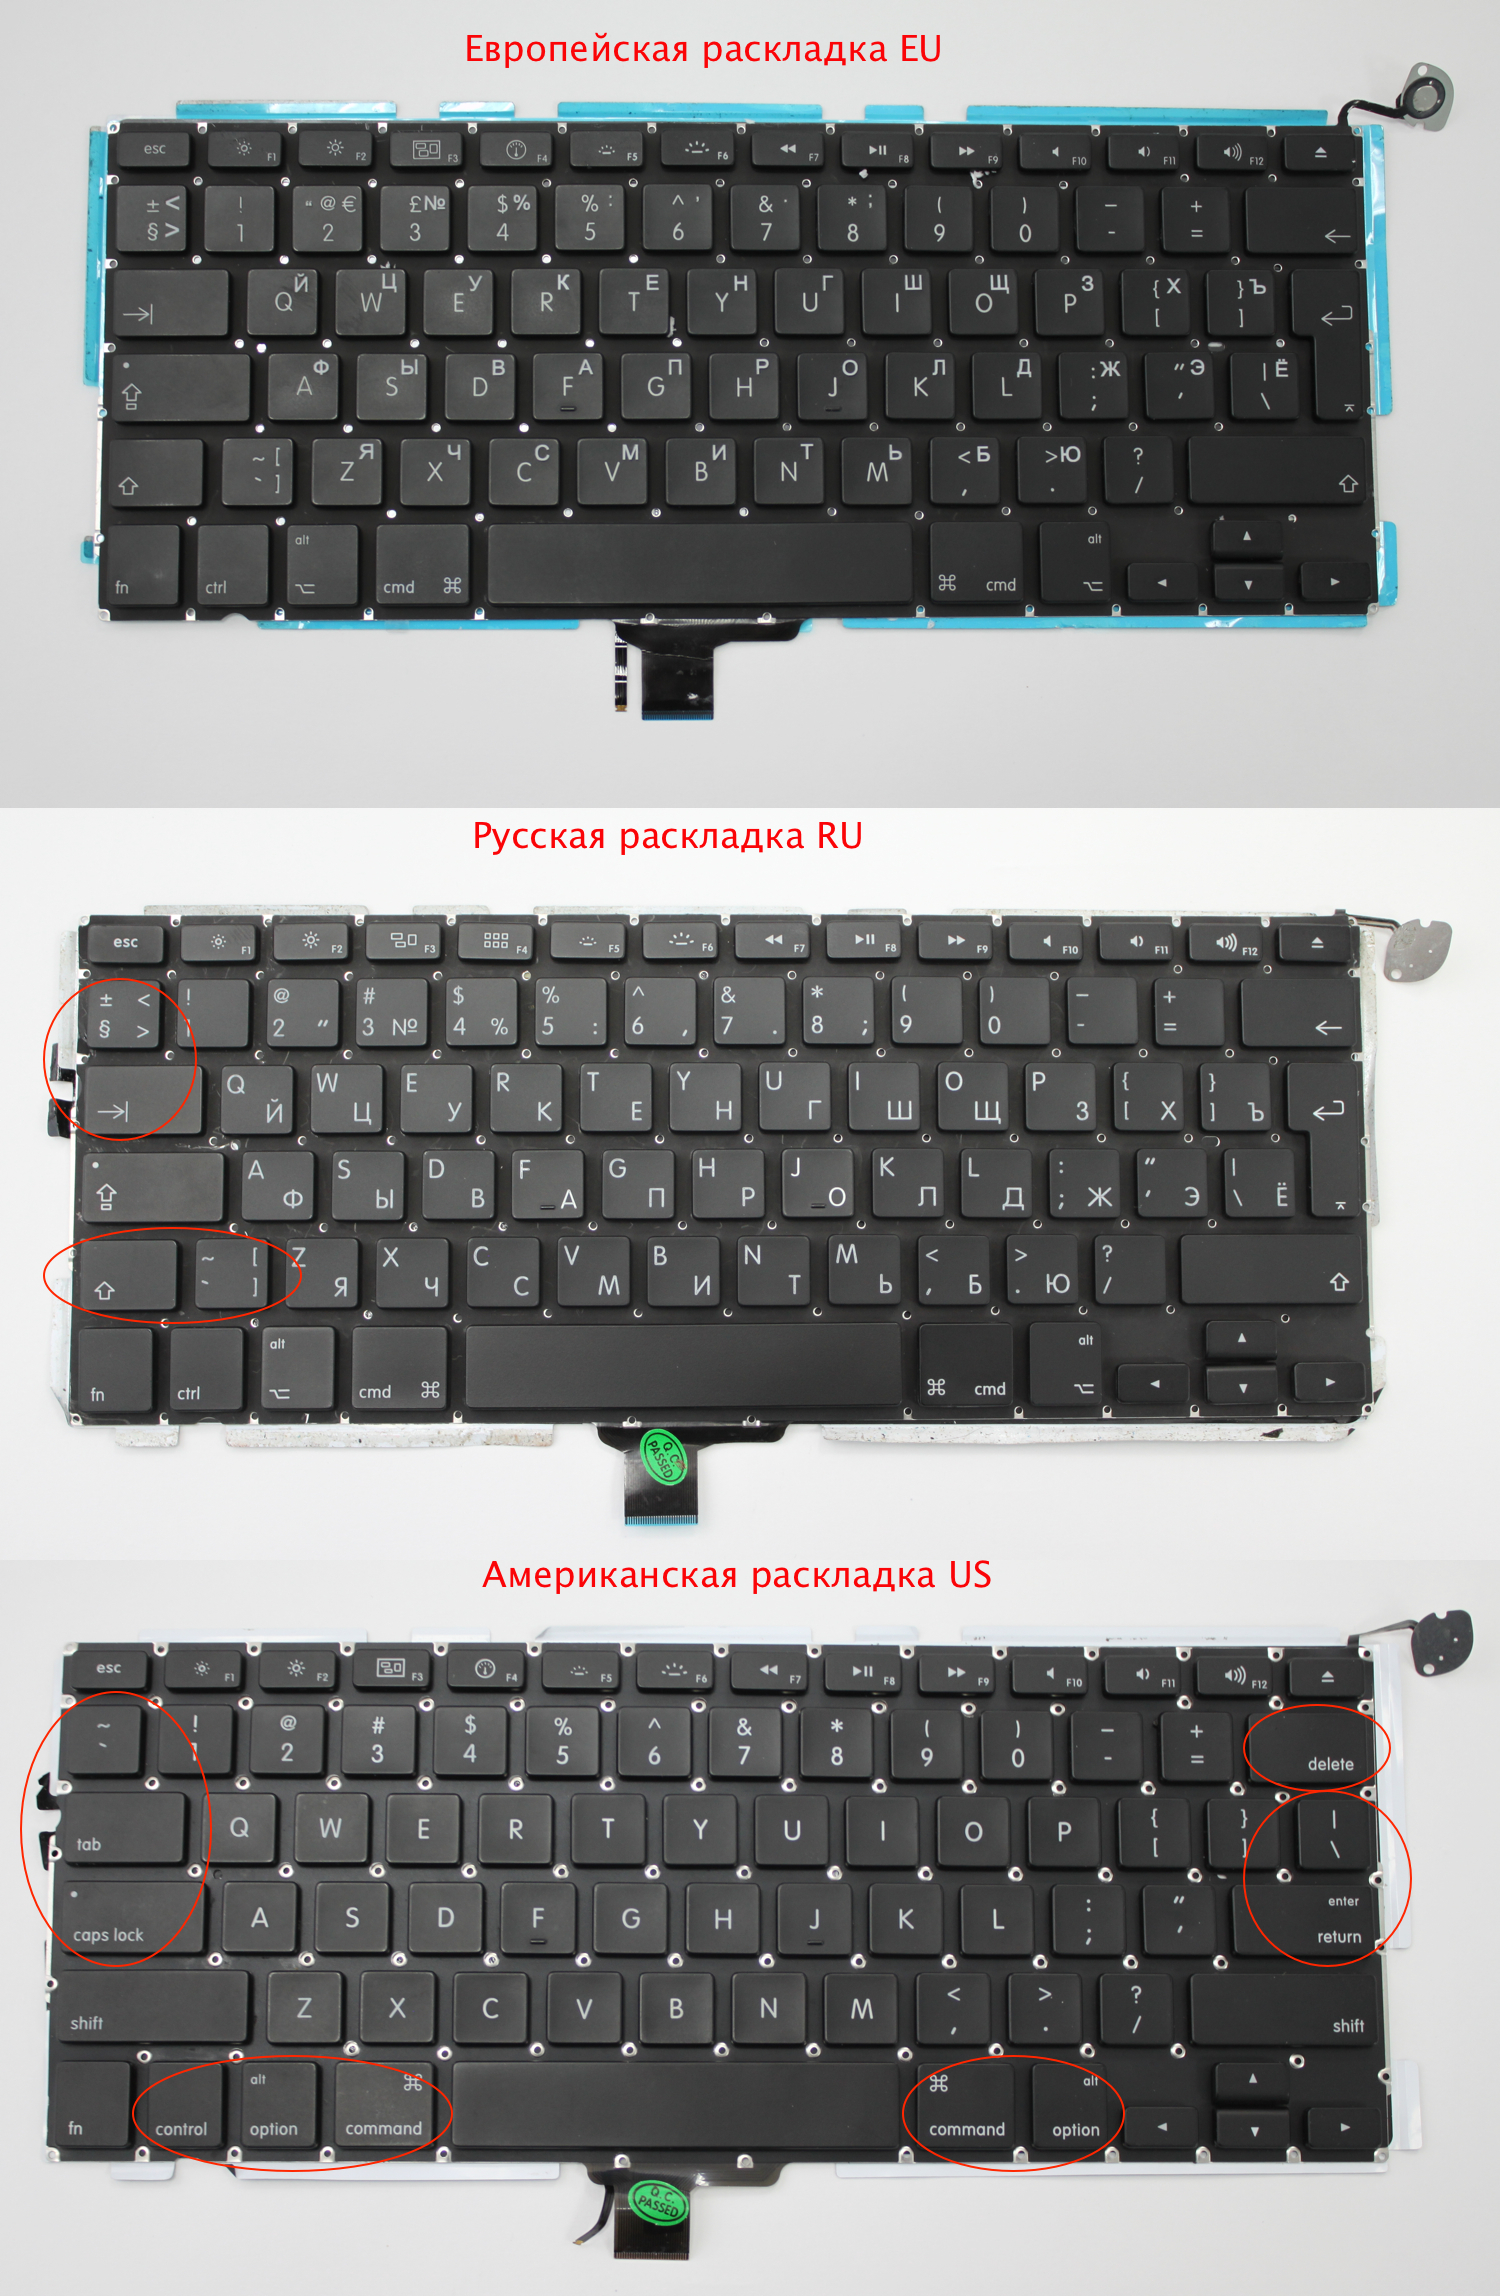 Отличие европейской, американской и русской клавиатуры (EU, US, RU)